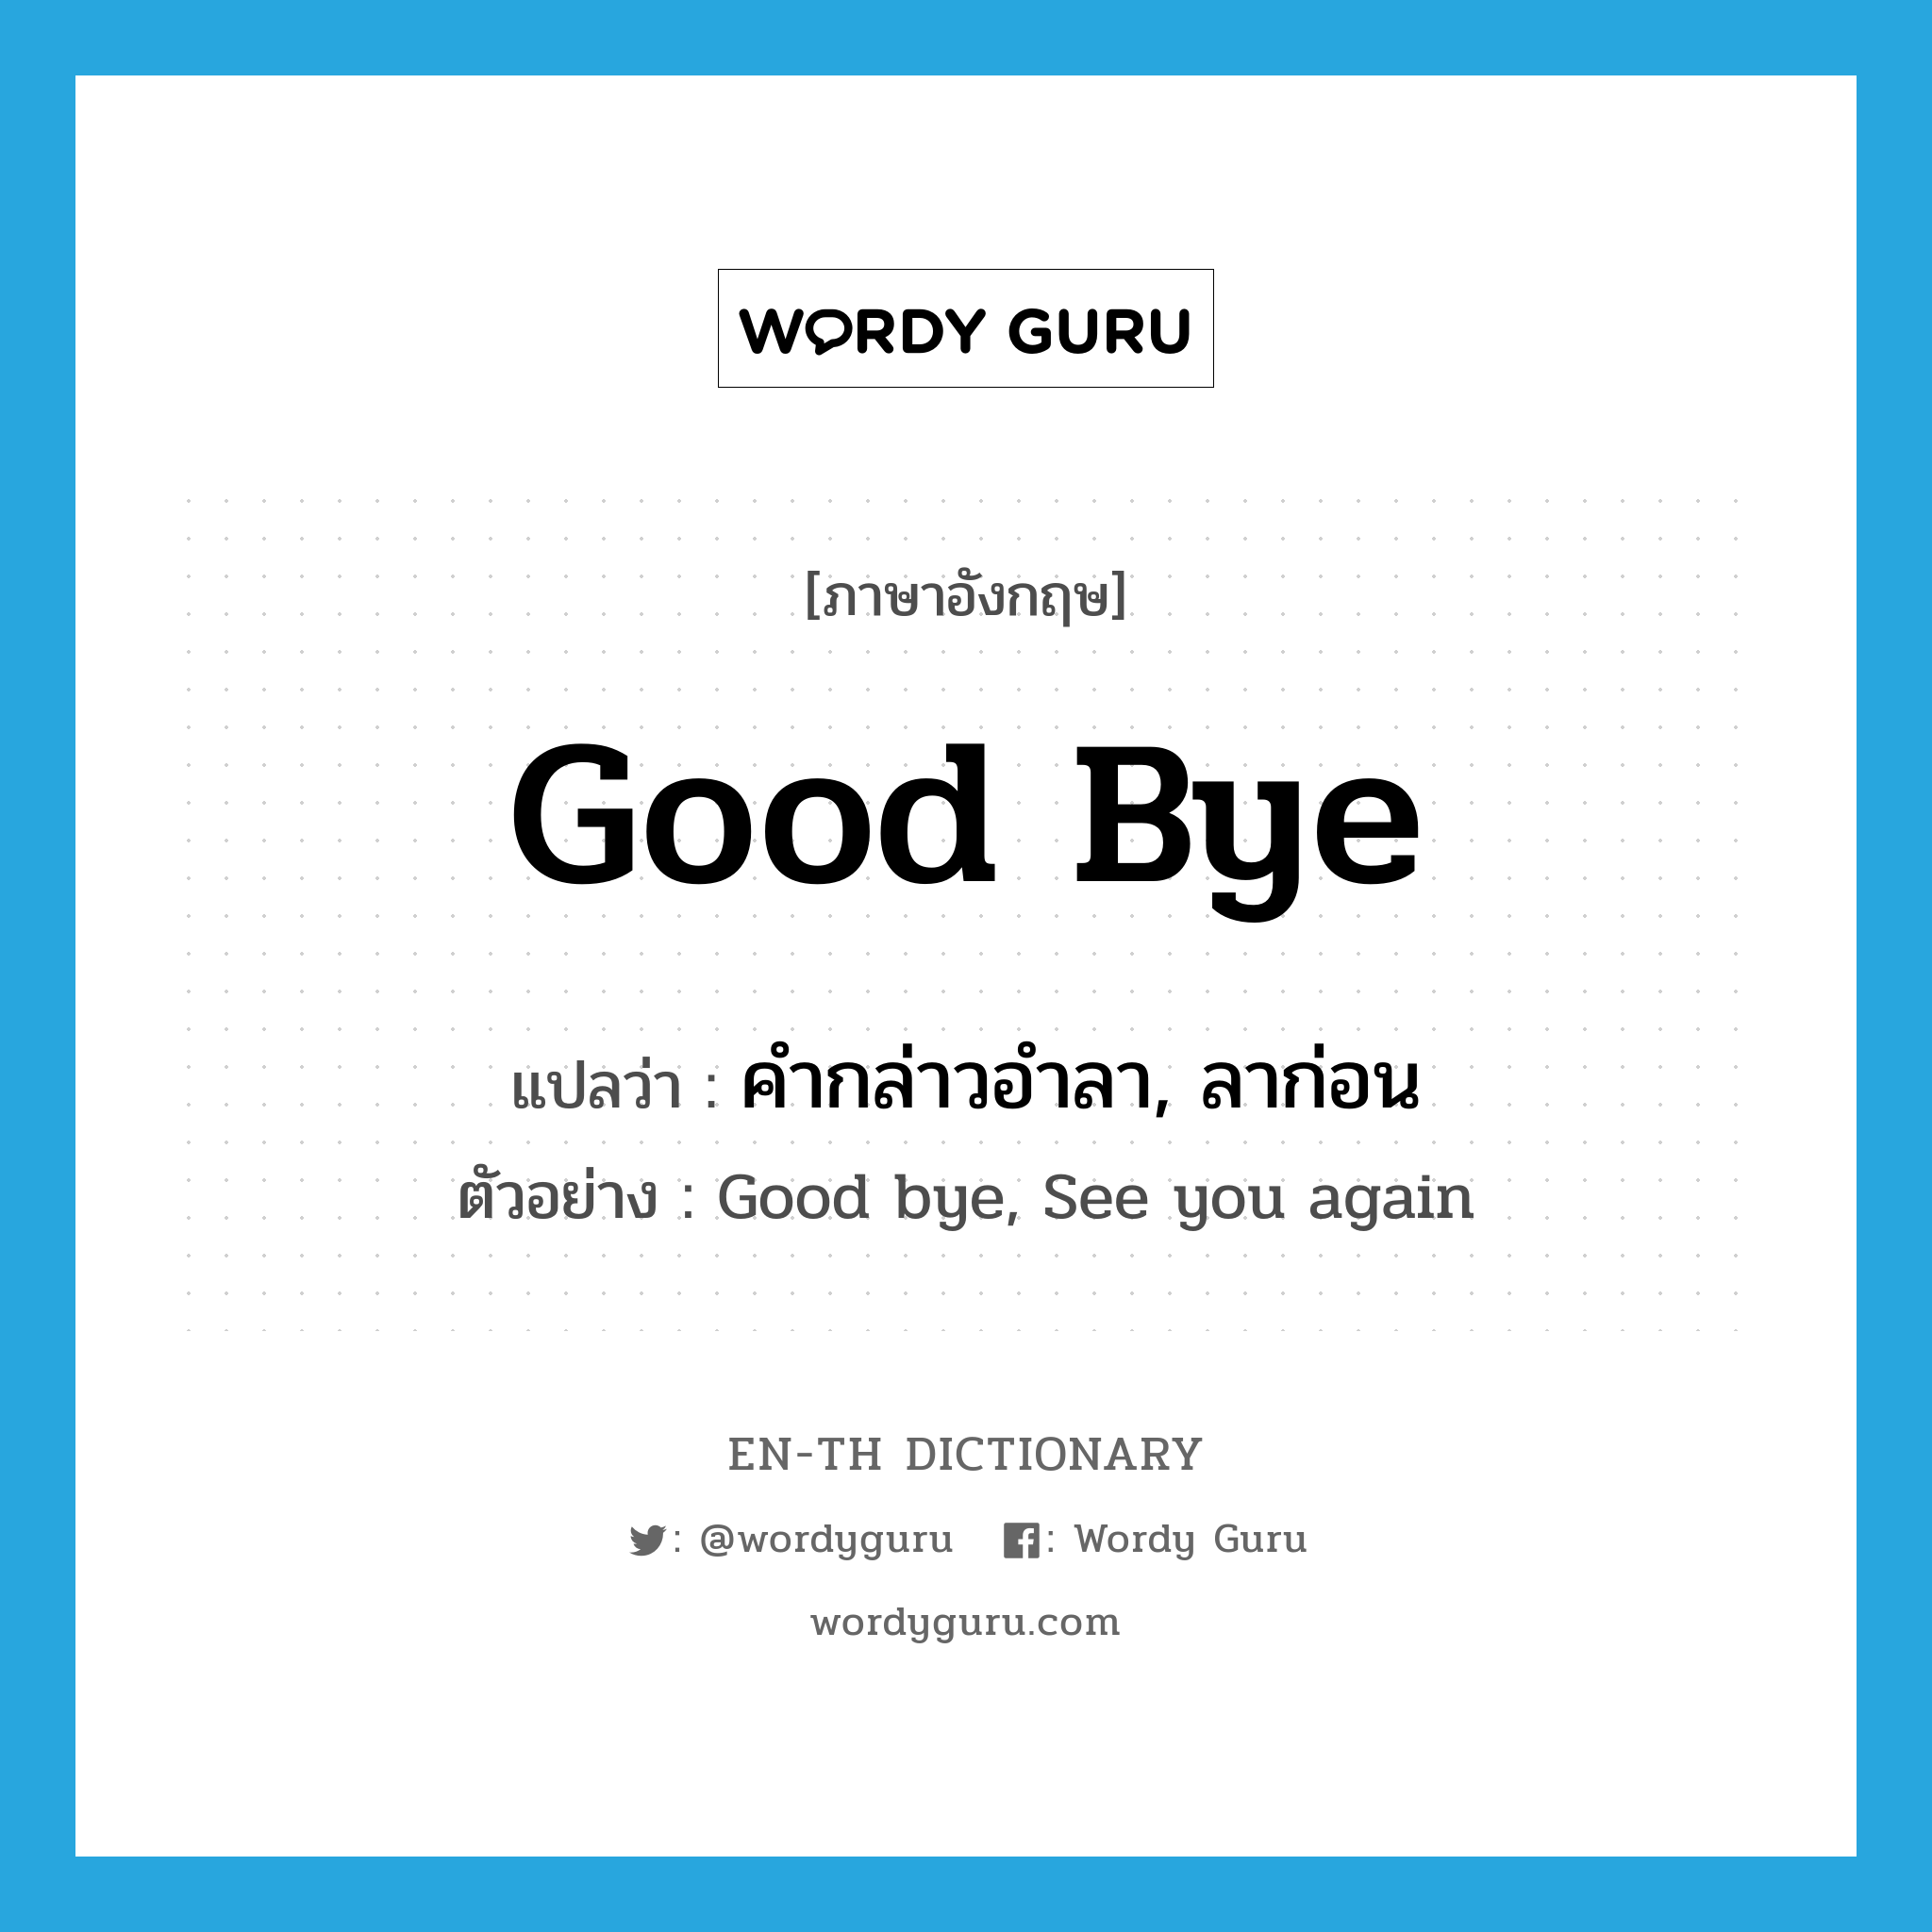 คำกล่าวอำลา, ลาก่อน ภาษาอังกฤษ?, คำศัพท์ภาษาอังกฤษ คำกล่าวอำลา, ลาก่อน แปลว่า Good bye ประเภท N ตัวอย่าง Good bye, See you again หมวด N